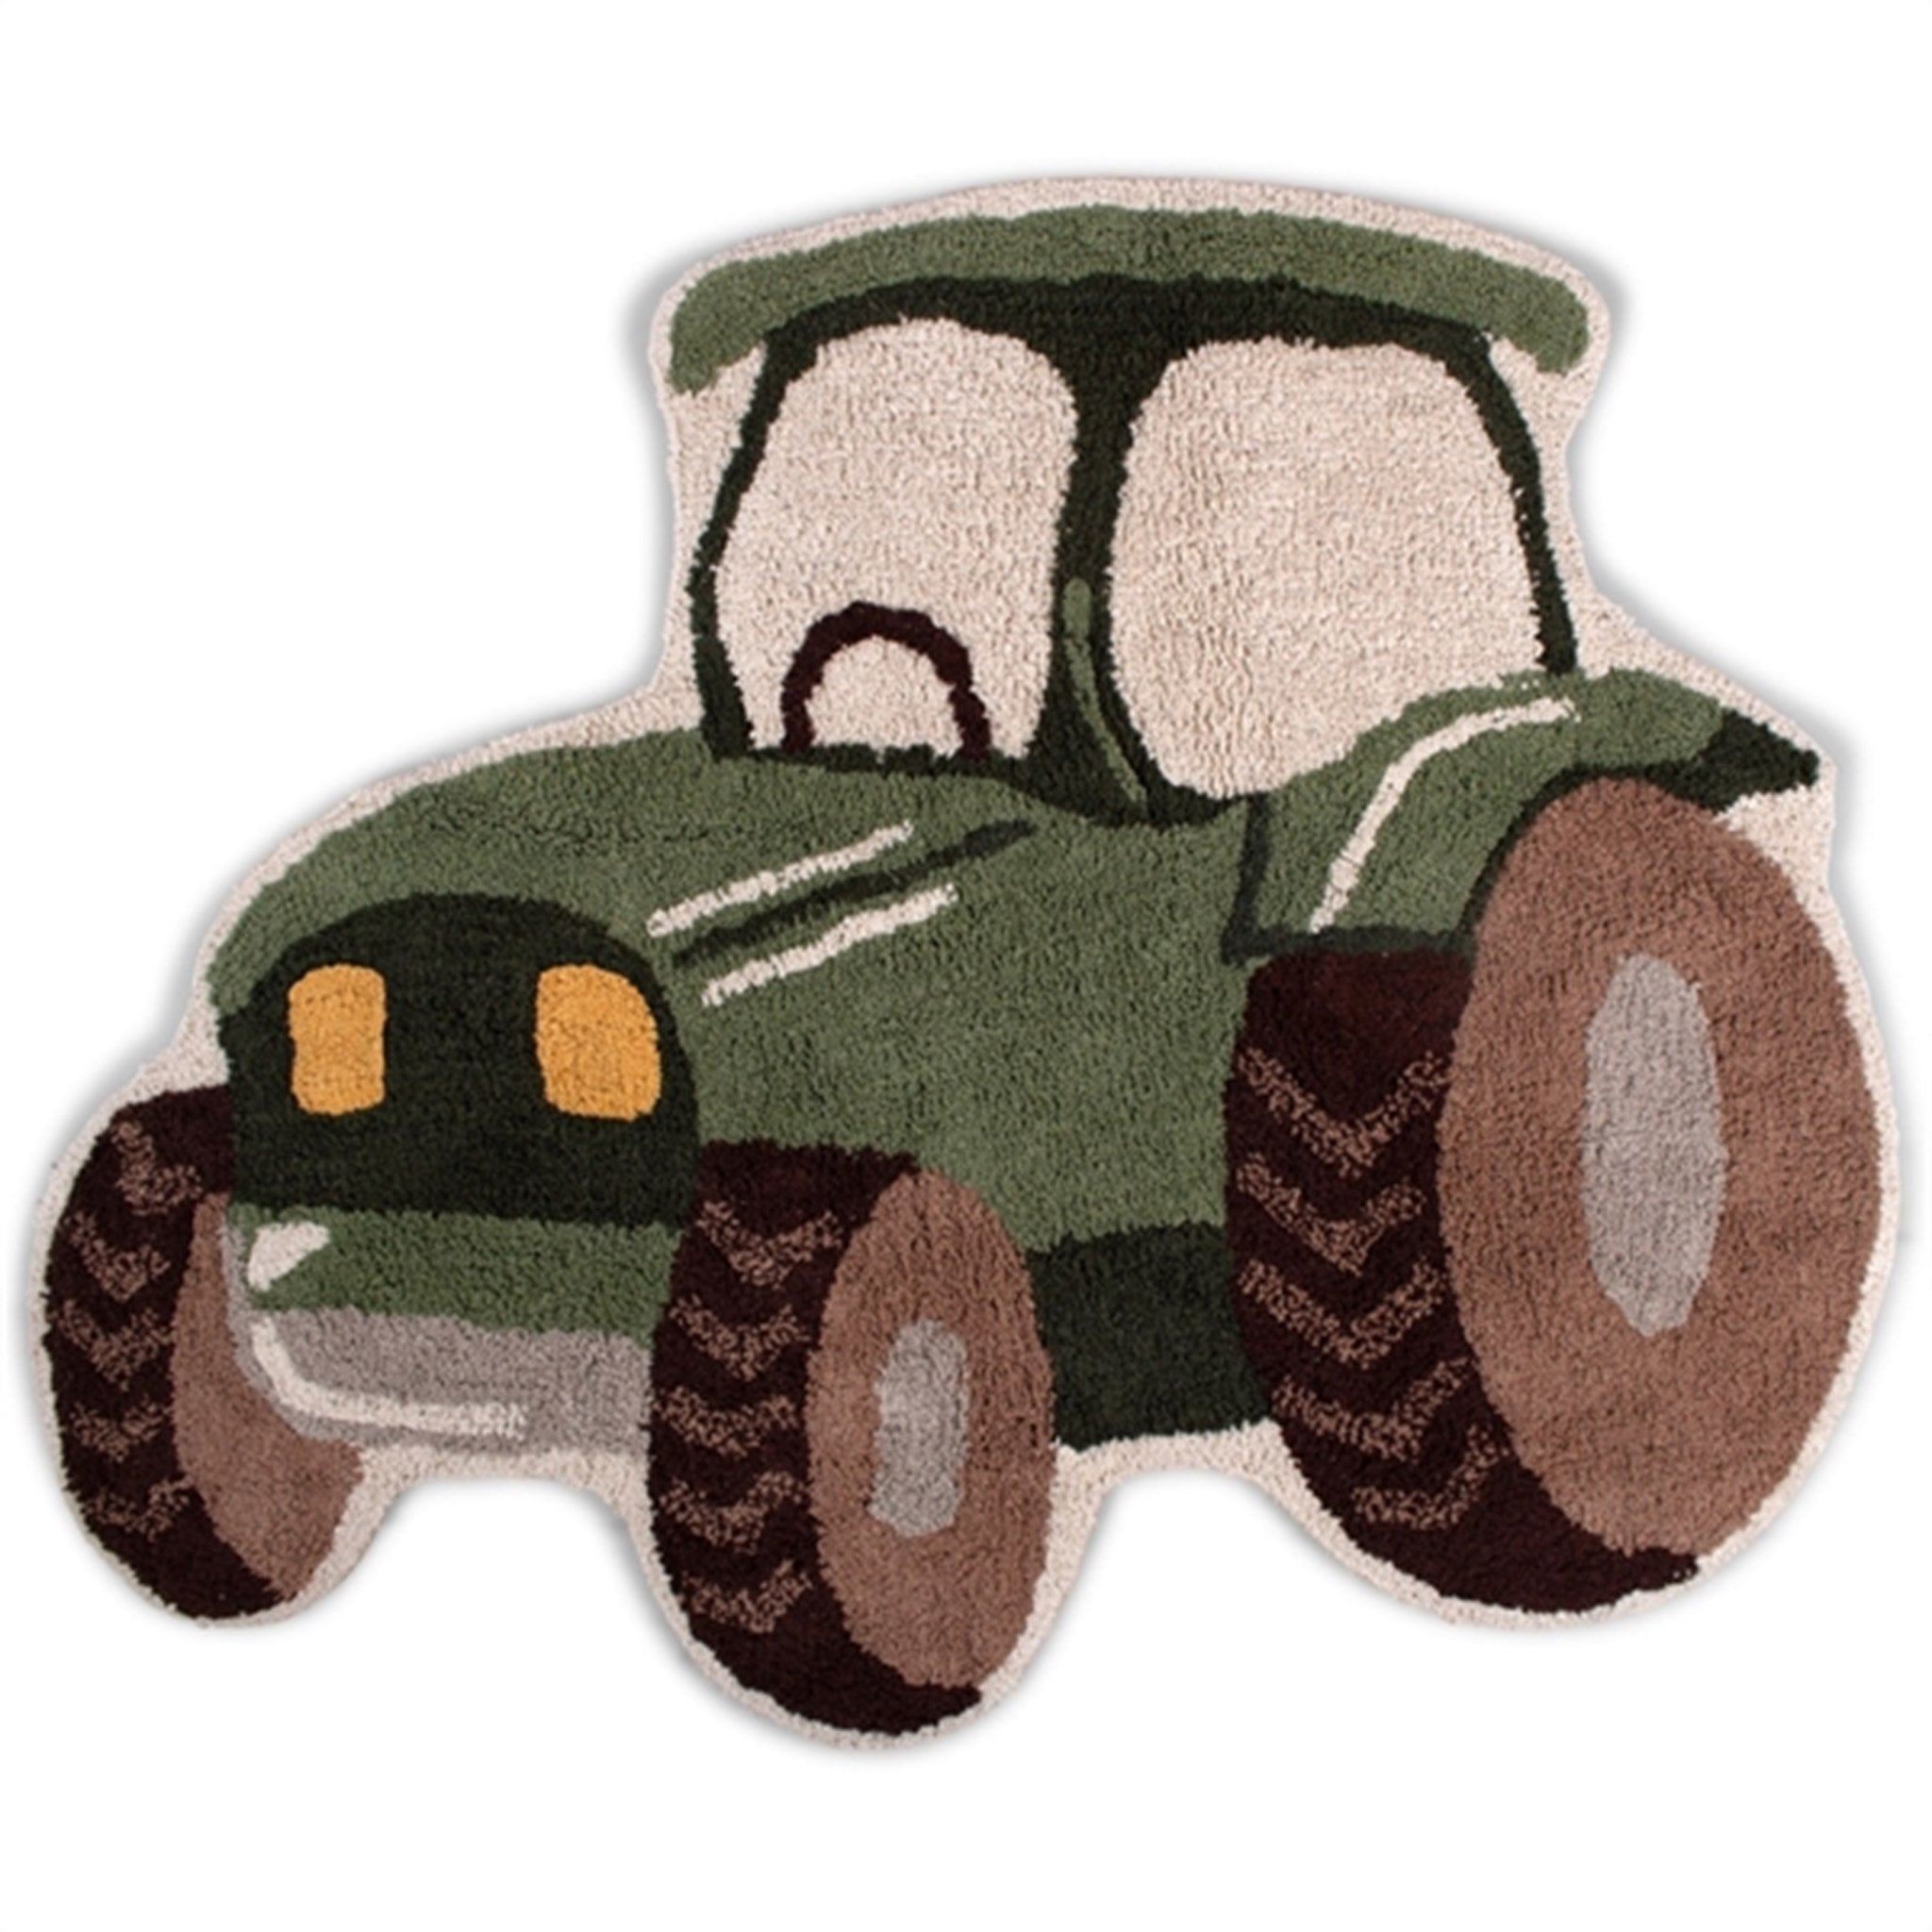 FILIBABBA Rug Tractor